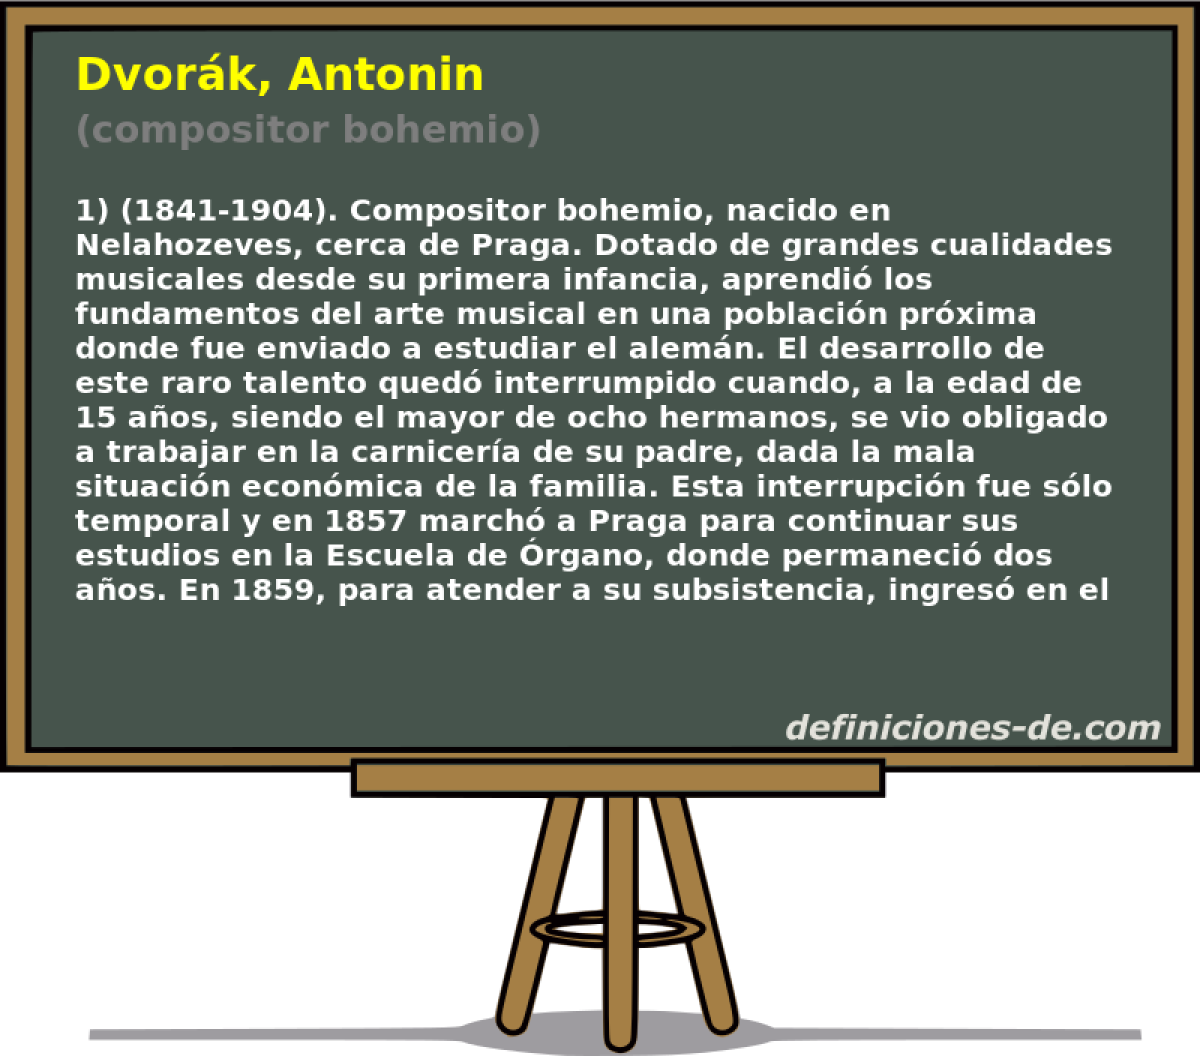 Dvork, Antonin (compositor bohemio)